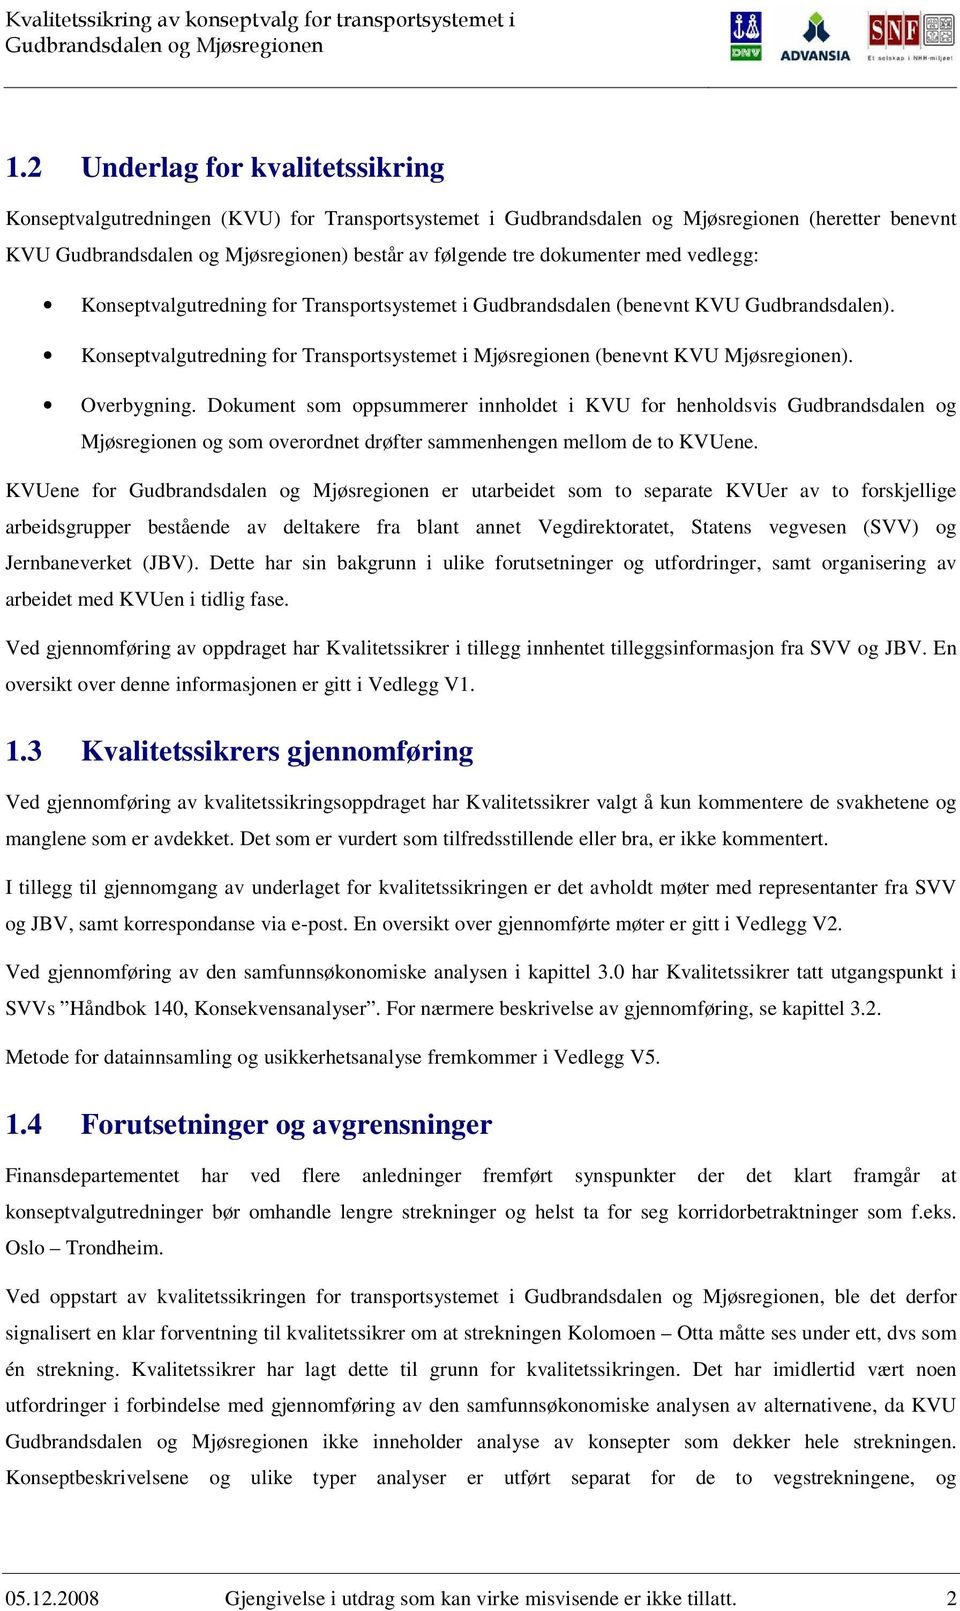 Dokument som oppsummerer innholdet i KVU for henholdsvis Gudbrandsdalen og Mjøsregionen og som overordnet drøfter sammenhengen mellom de to KVUene.